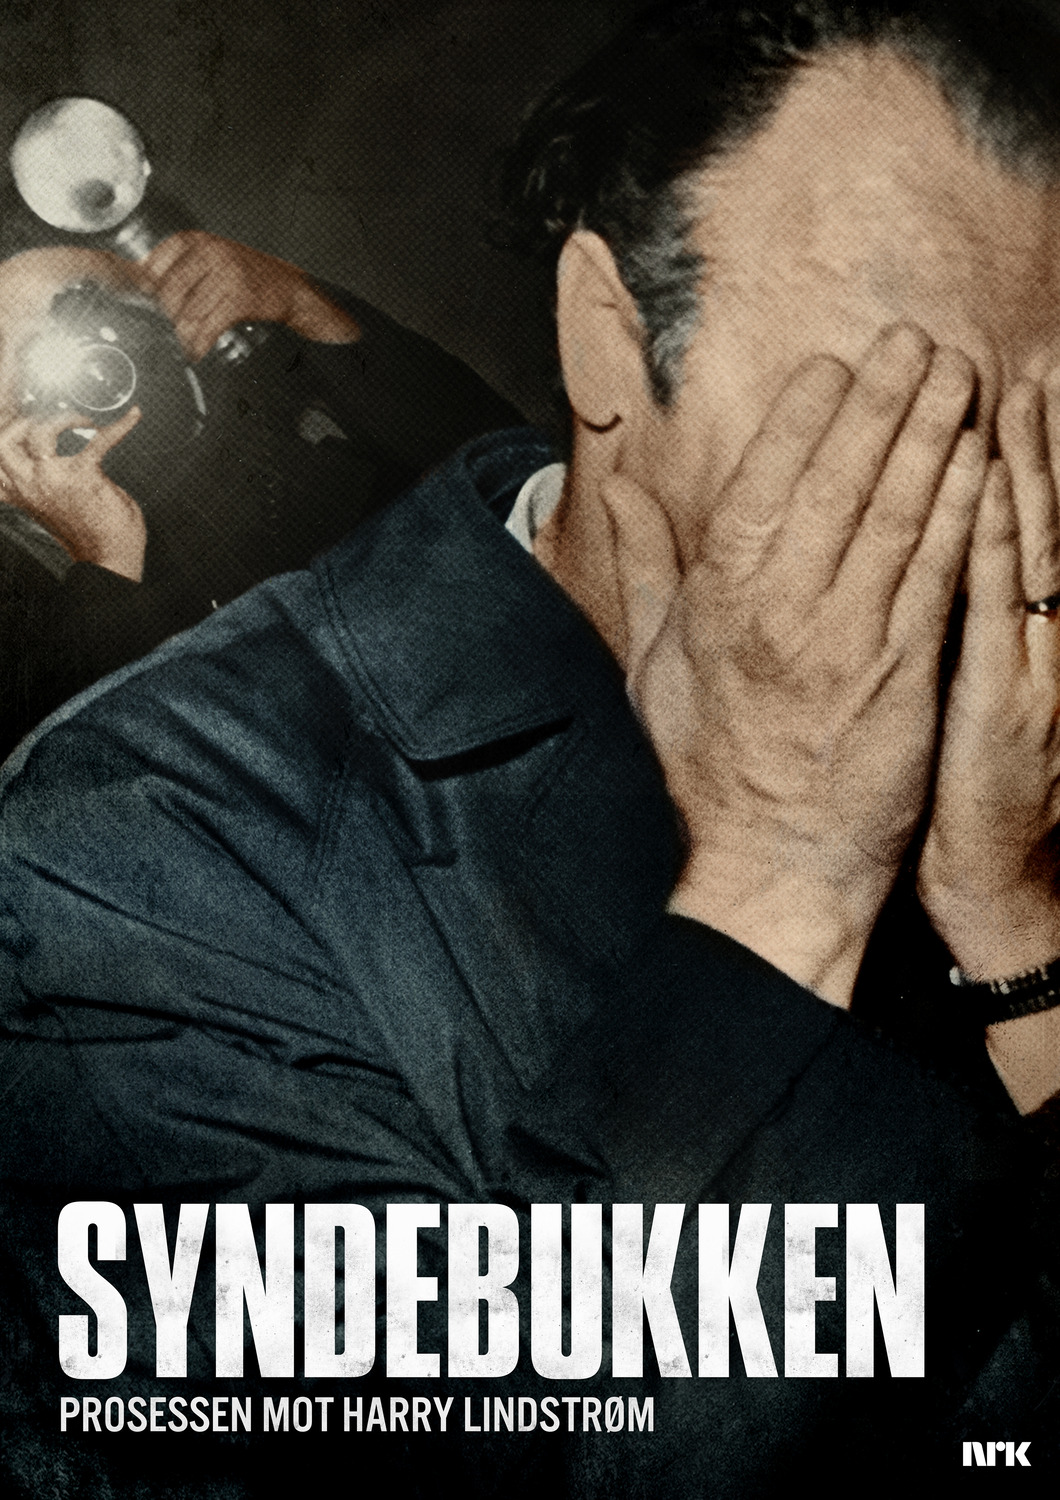 Extra Large Movie Poster Image for Syndebukken: Prosessen mot Harry Lindstrøm 